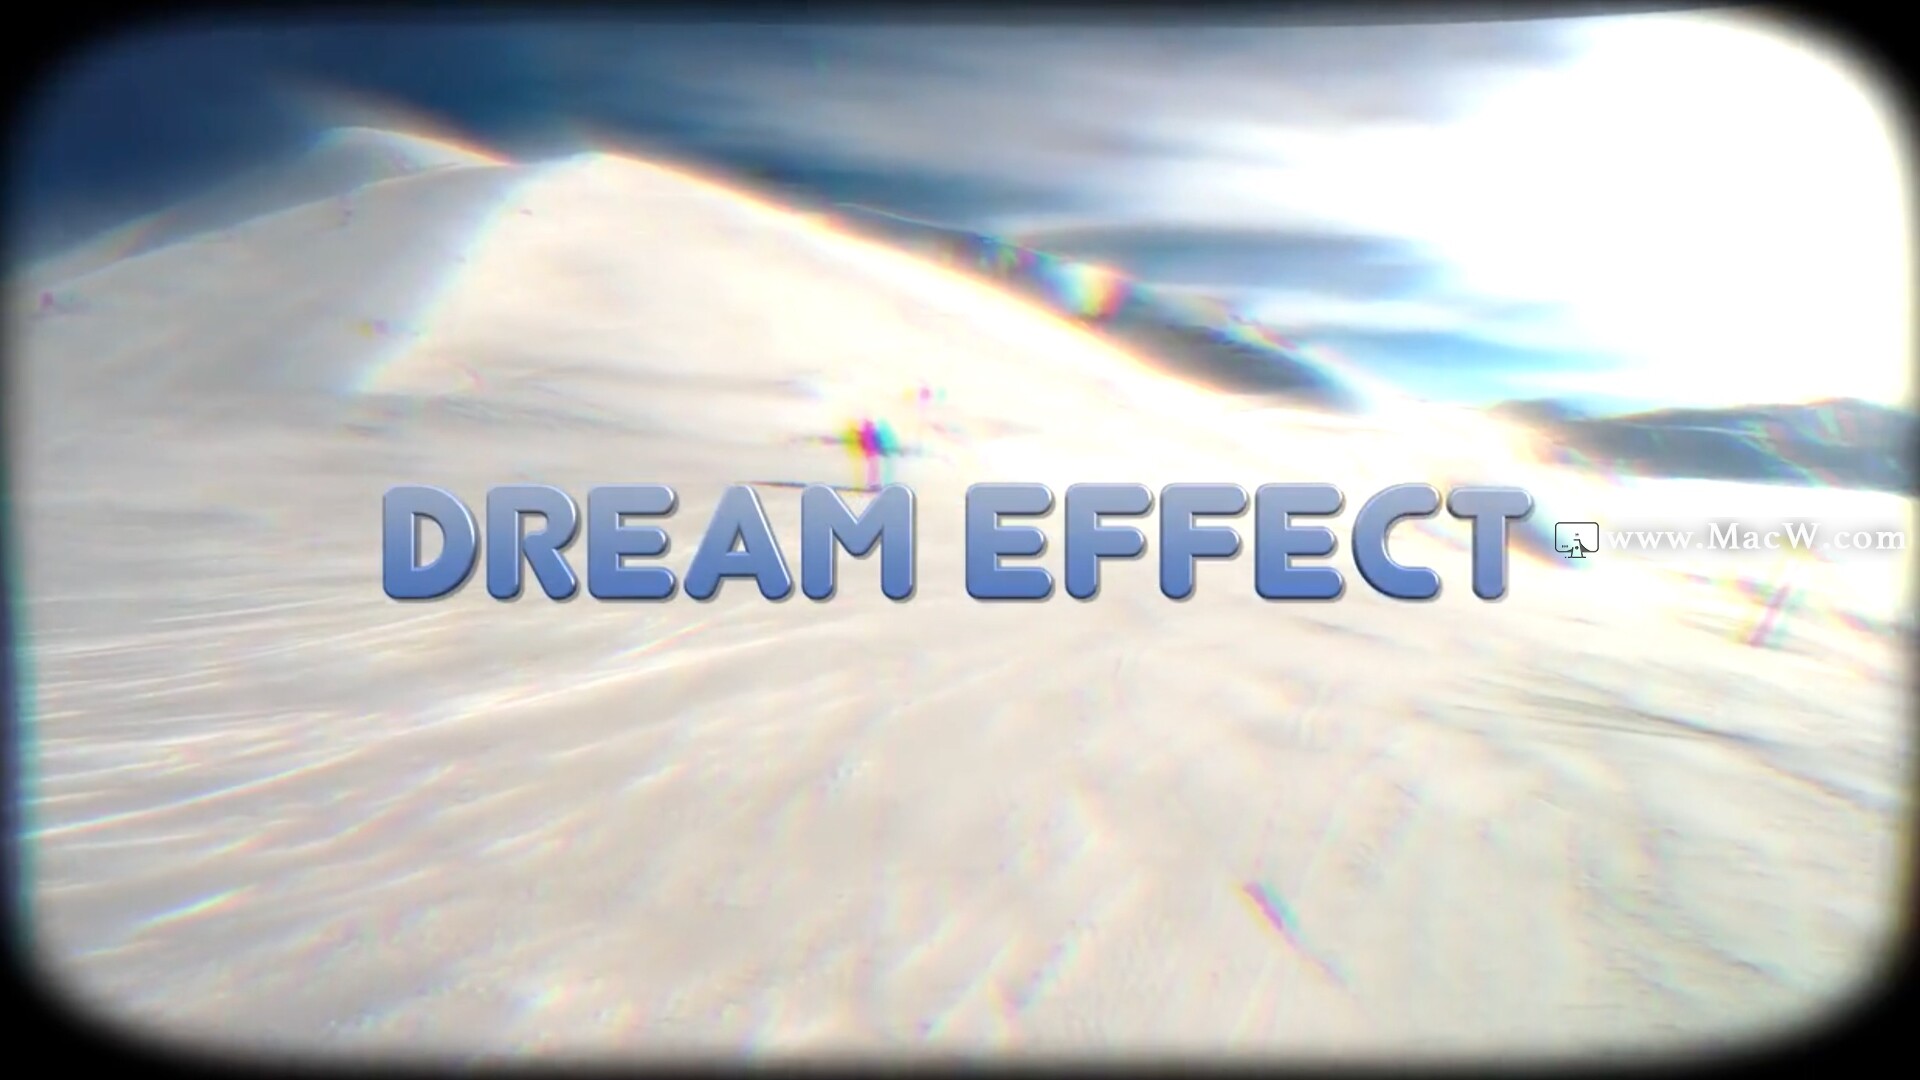 FCPX插件:8组梦境回忆遐想闪回效果 Dream Effect